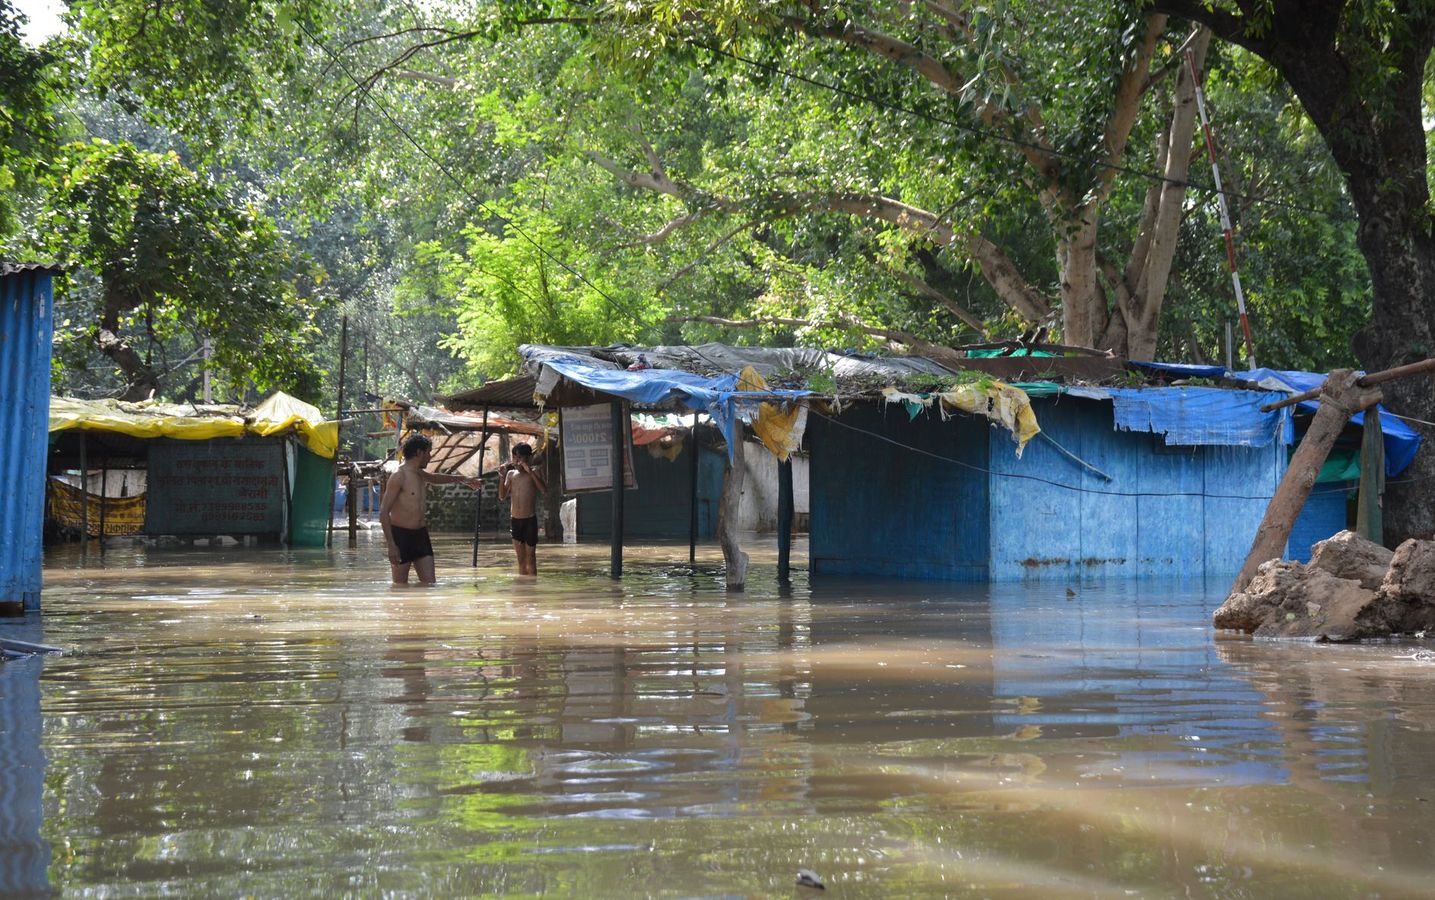 जल संसाधन मंत्रालय के प्रमुख सचिव ने कहा- मप्र में हो चुका पुनर्वास, गुजरात सरकार दे चुकी रुपया